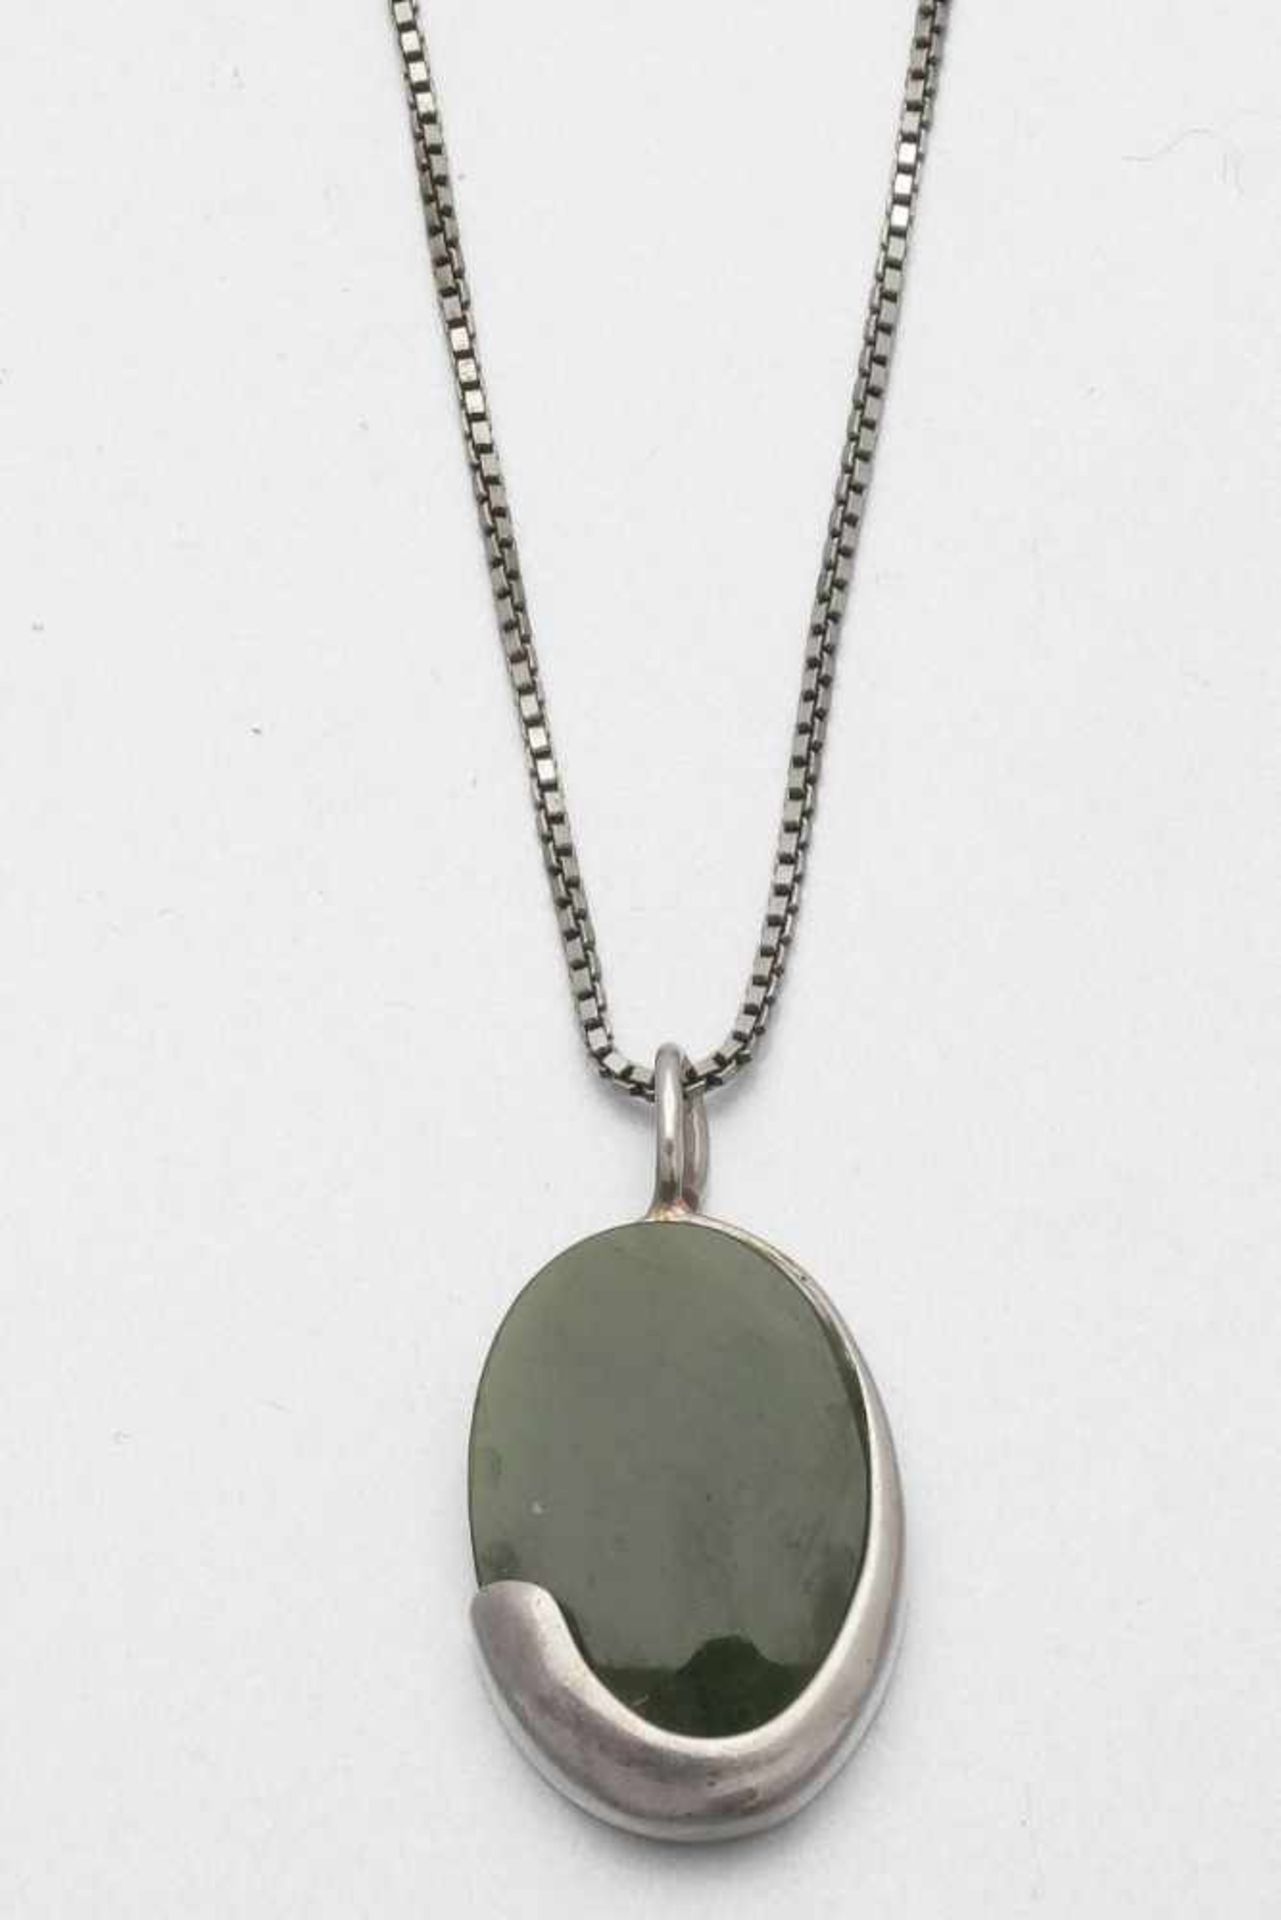 Jade-Schmuckset in Silber: Ring, Anhänger und Armband835er und 925er Silber, gestemp. Div. Jade. - Bild 2 aus 3